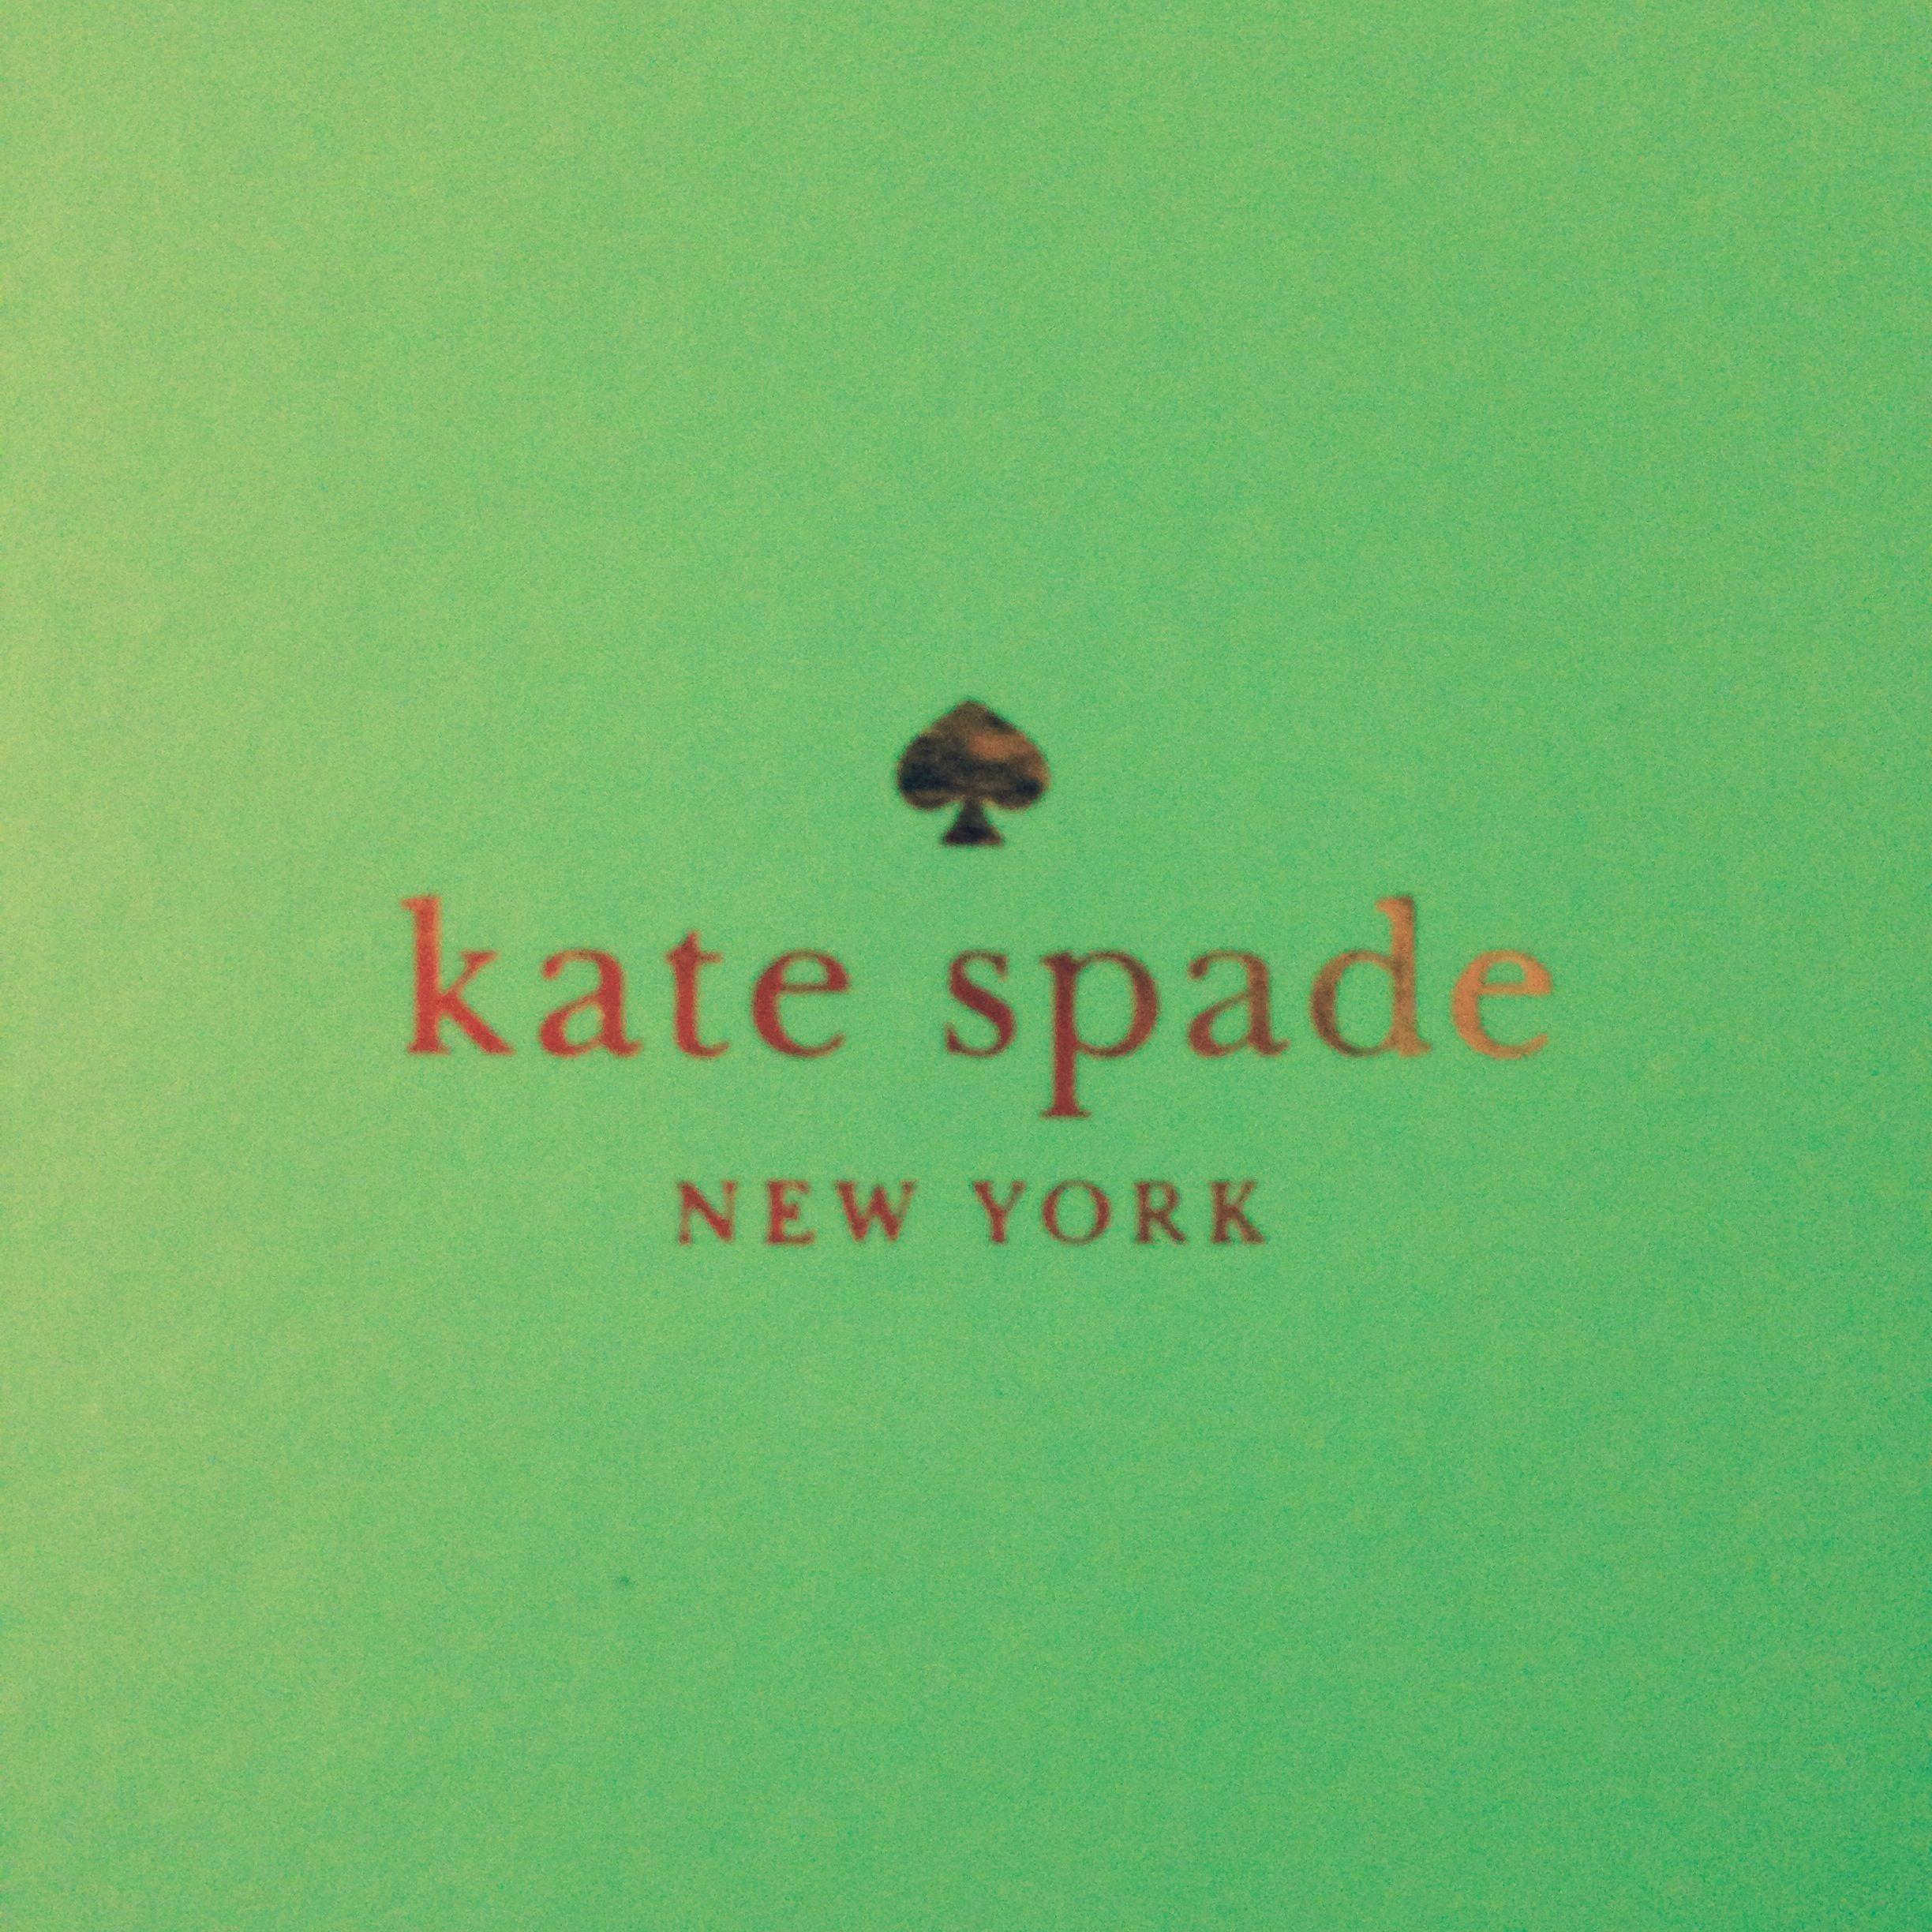 Gold Kate Spade Logo - Kate Spade